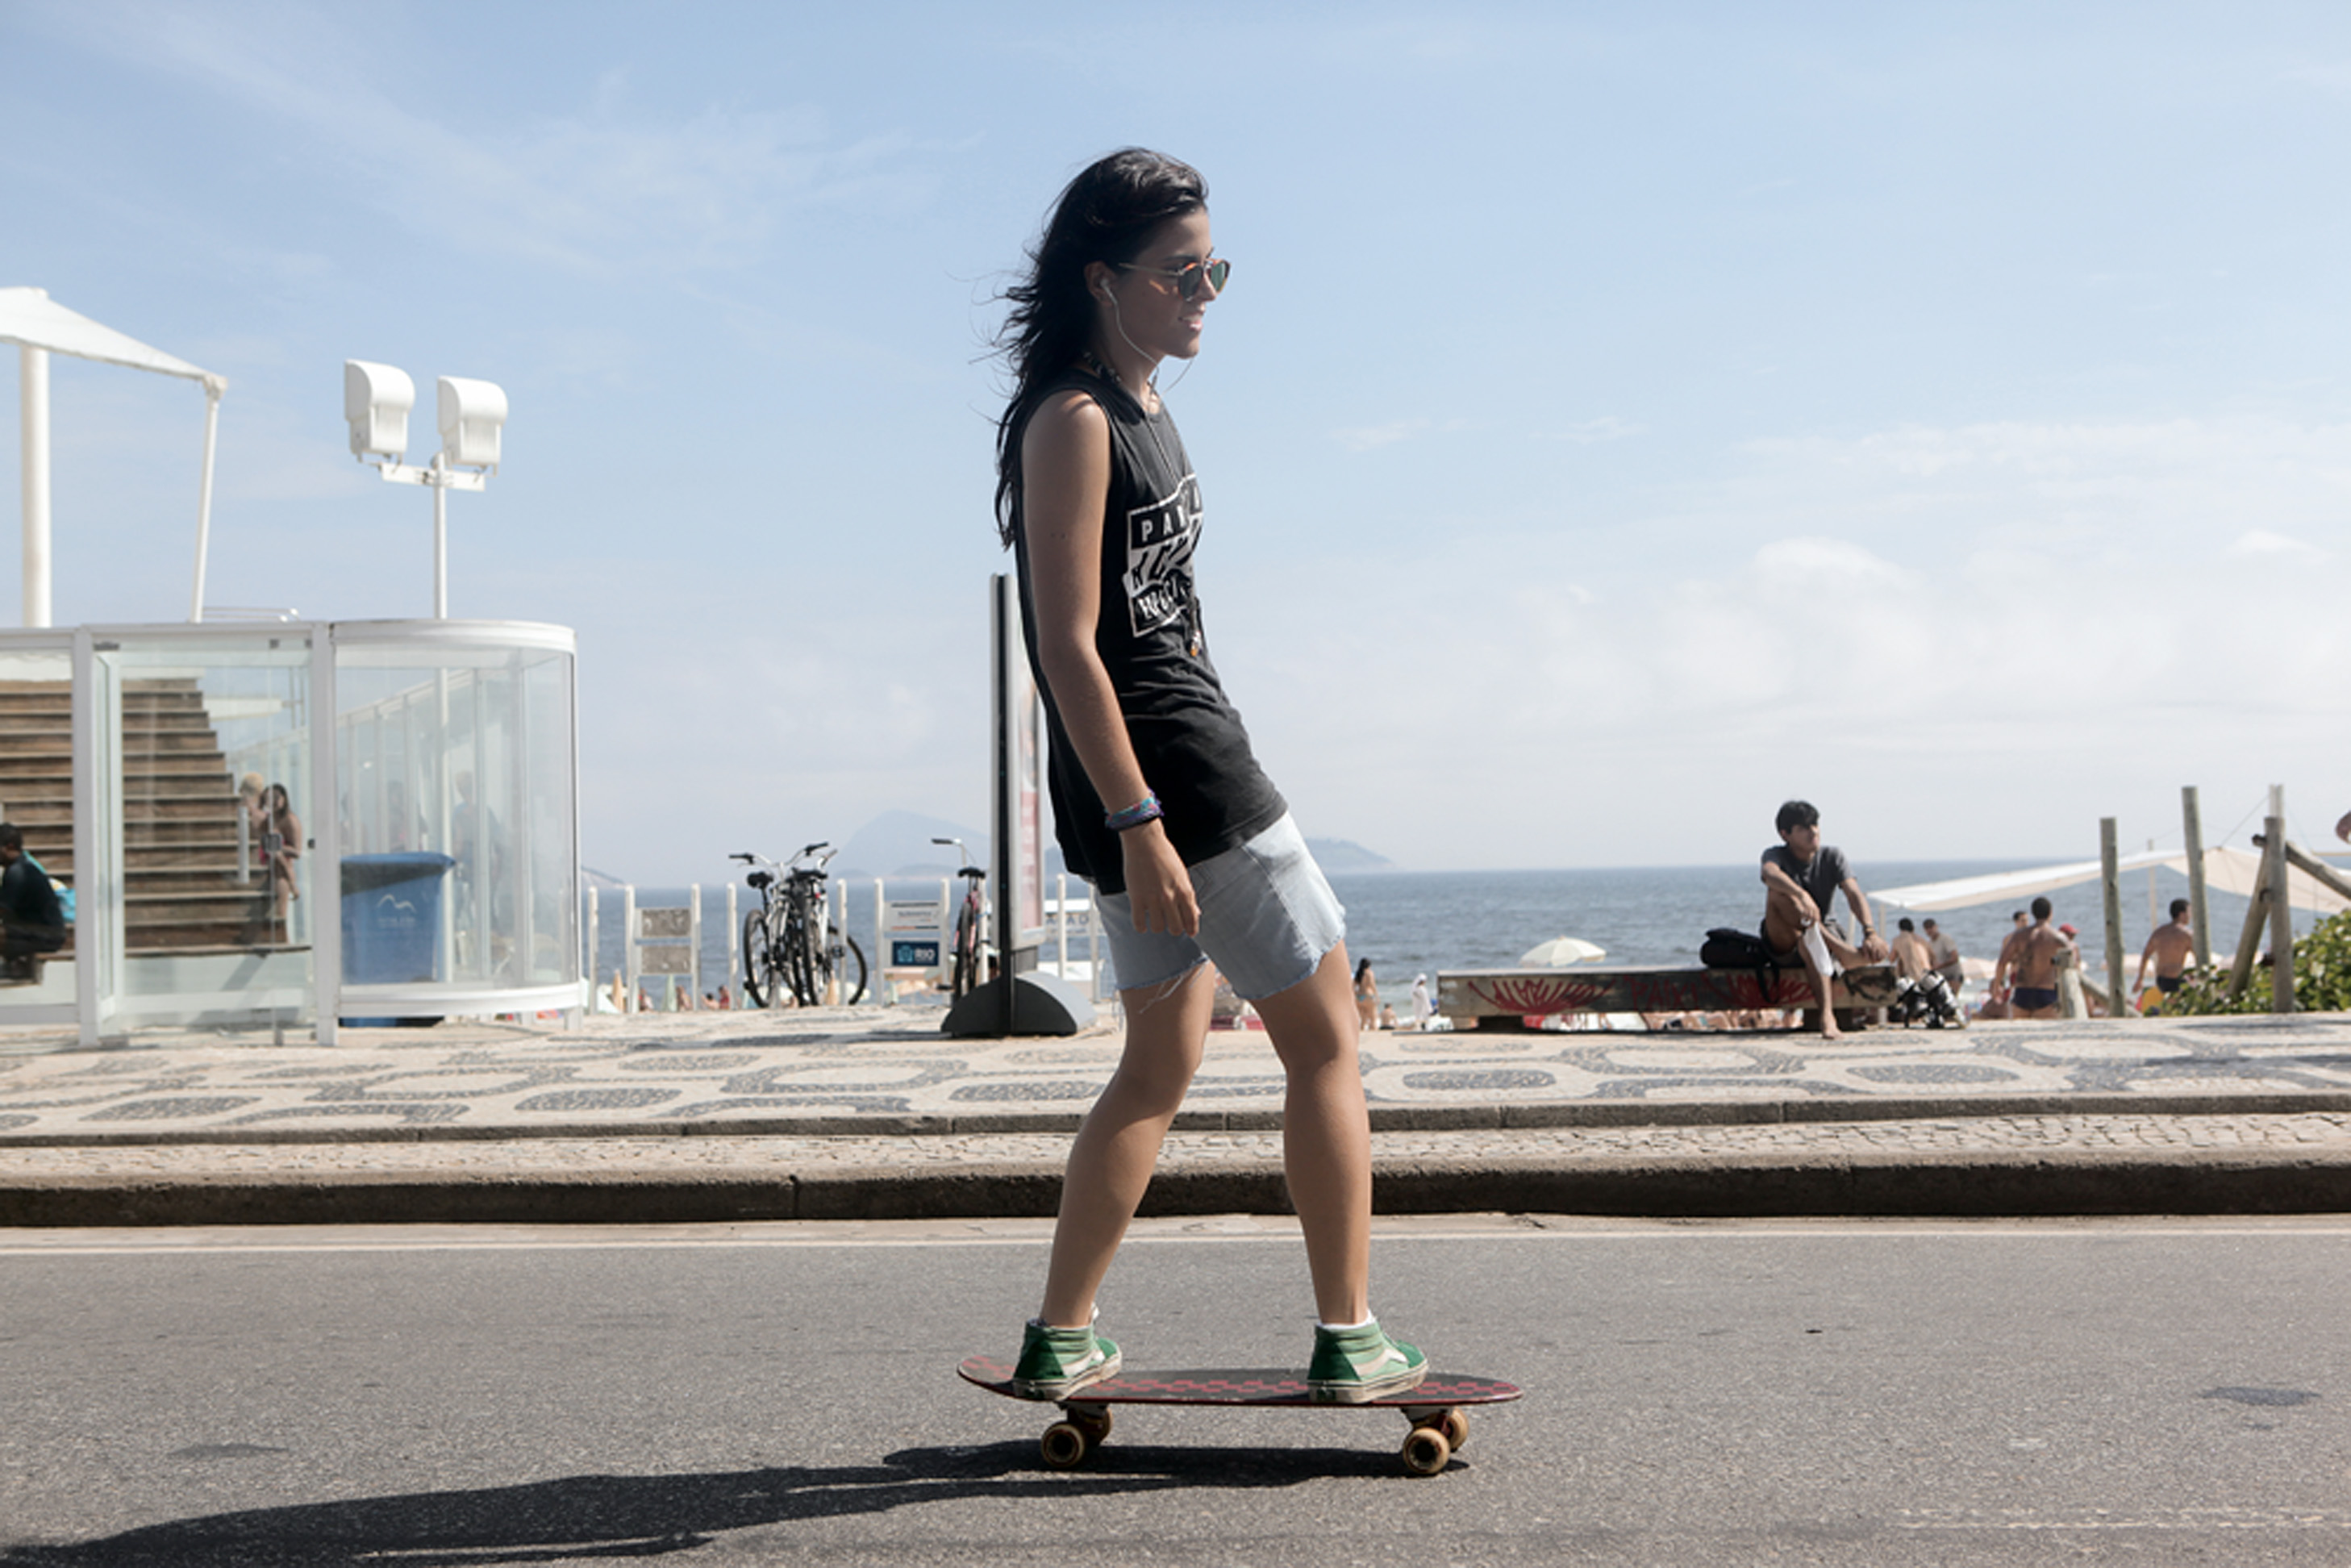 Ilana Machado, 24 anos, diretora de fotografia, usa Skate tradicional. “Não tenha medo de cair, isso vai acontecer.”